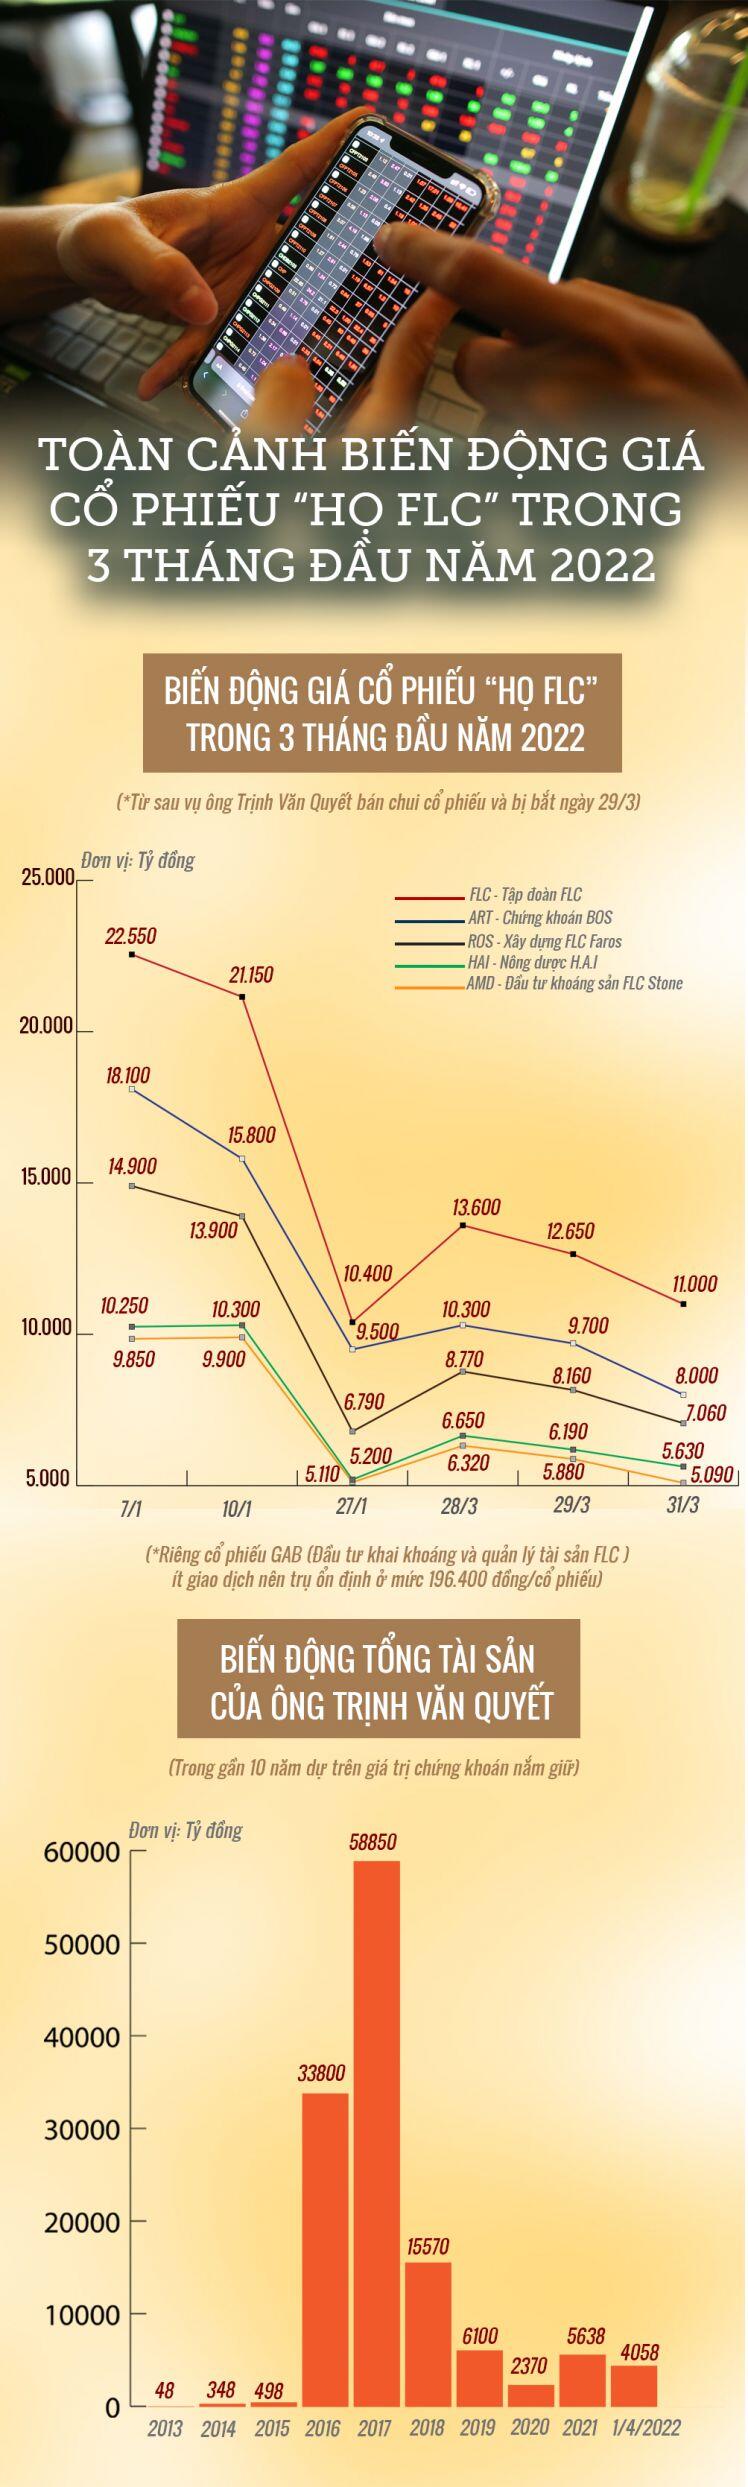 Cổ phiếu "họ FLC” tăng giảm như như lên đồng, tài sản ông Trịnh Văn Quyết thay đổi chóng mặt